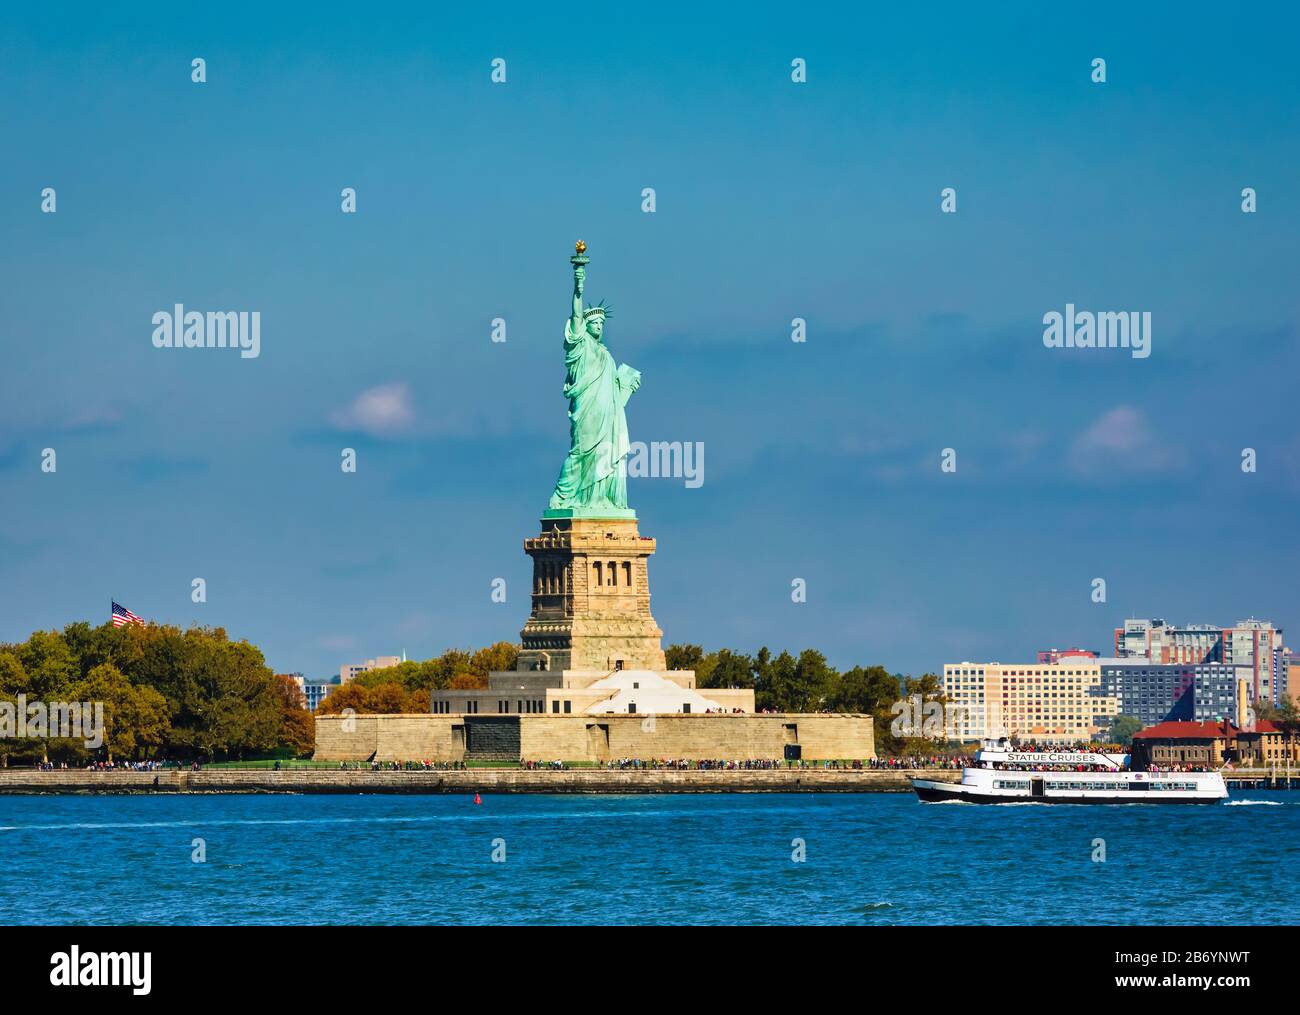 Freiheitsstatue auf Liberty Island, New York, New York State, Vereinigte Staaten von Amerika. Die 151 Fuß oder 46 Meter hohe Statue war ein Geschenk an die USA f. Stockfoto